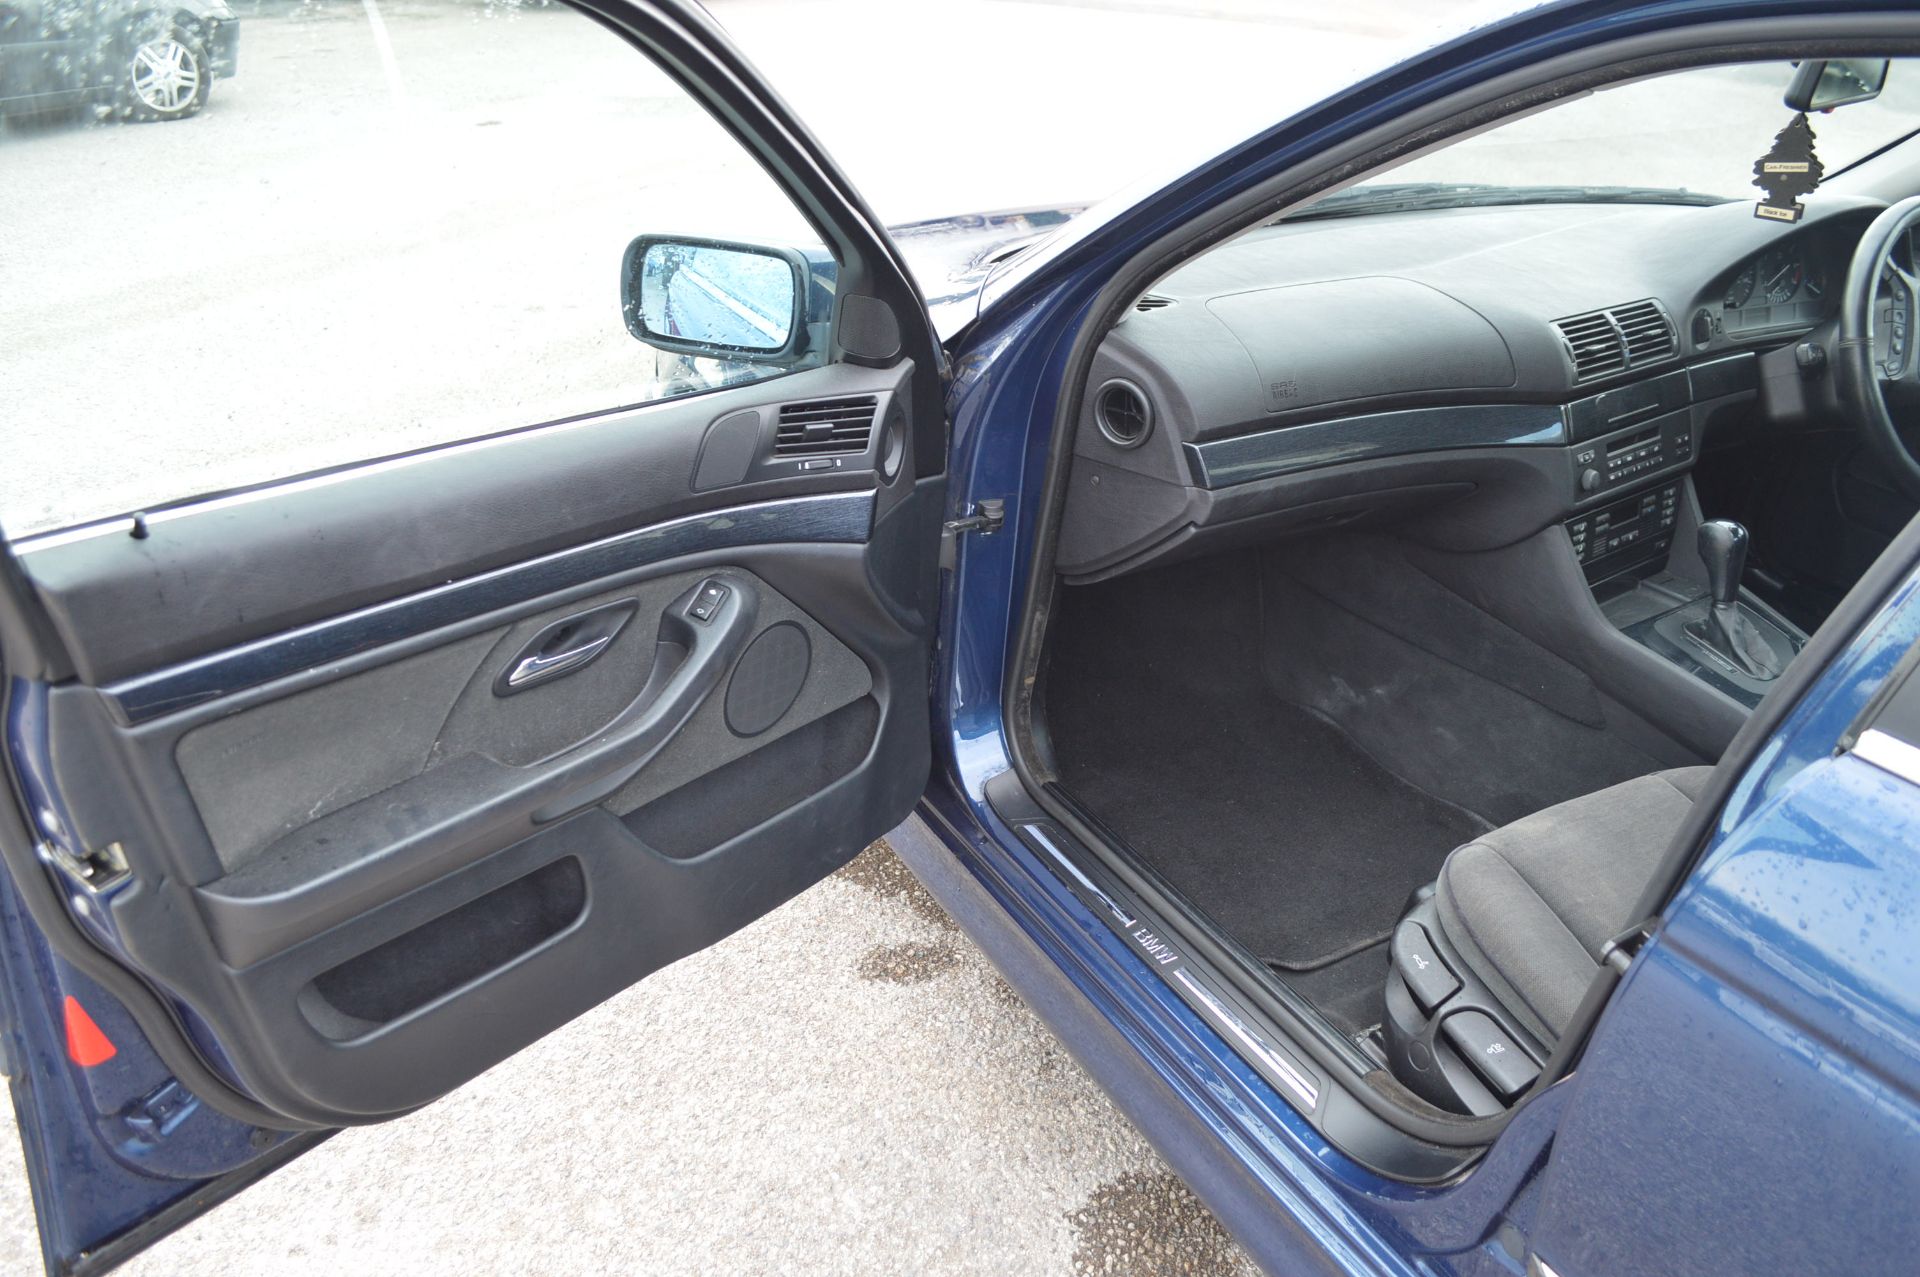 1998/R REG BLUE BMW 520I SE AUTOMATIC, AIR CON, 165K MILES *NO VAT* - Image 8 of 34